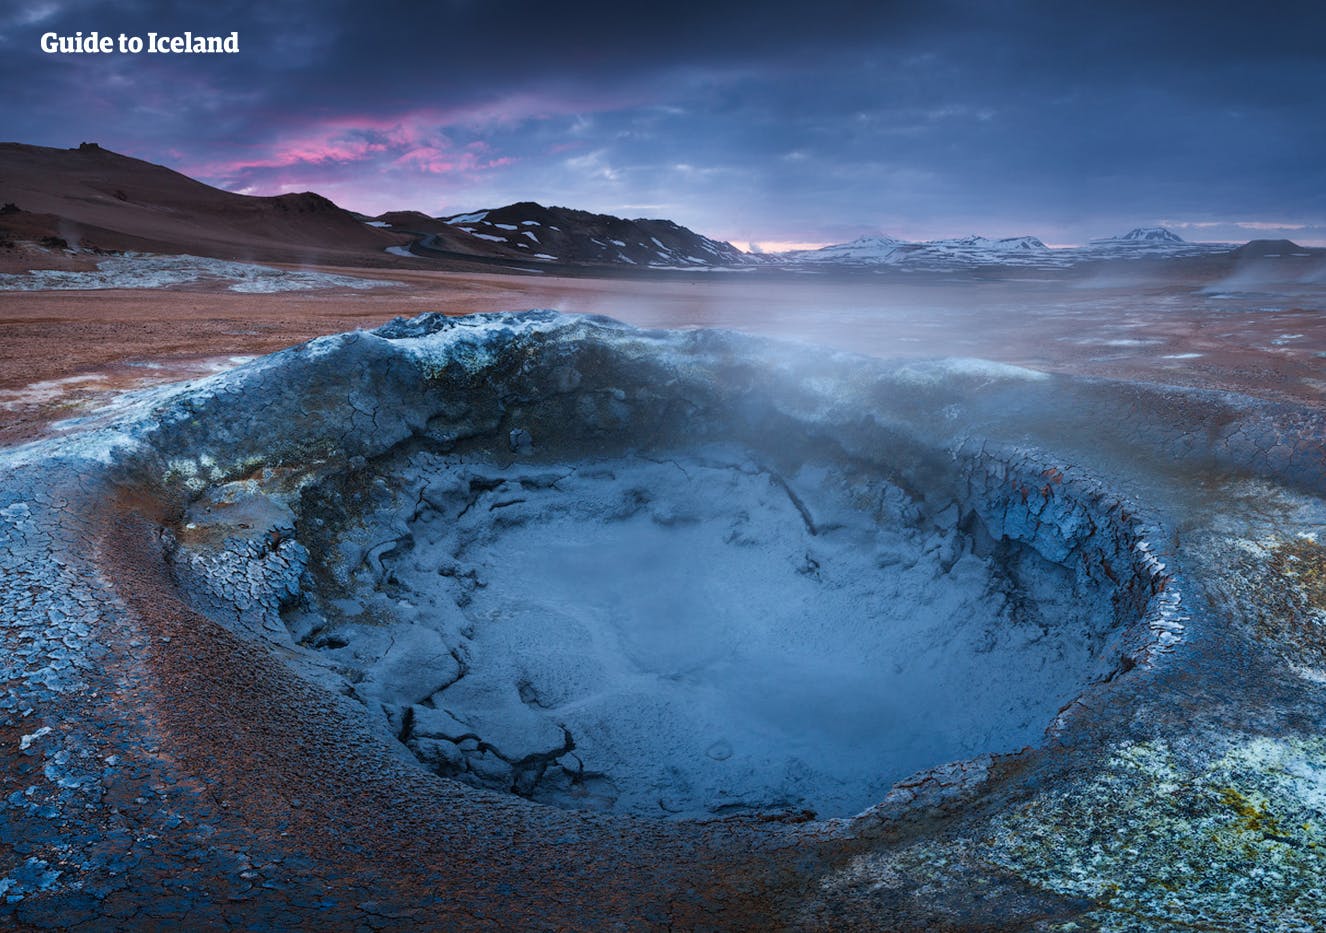 Baseny błotne, otwory wentylacyjne i gorące źródła w północno-islandzkiej strefie geotermalnej wypełniają powietrze dymem siarkowym.